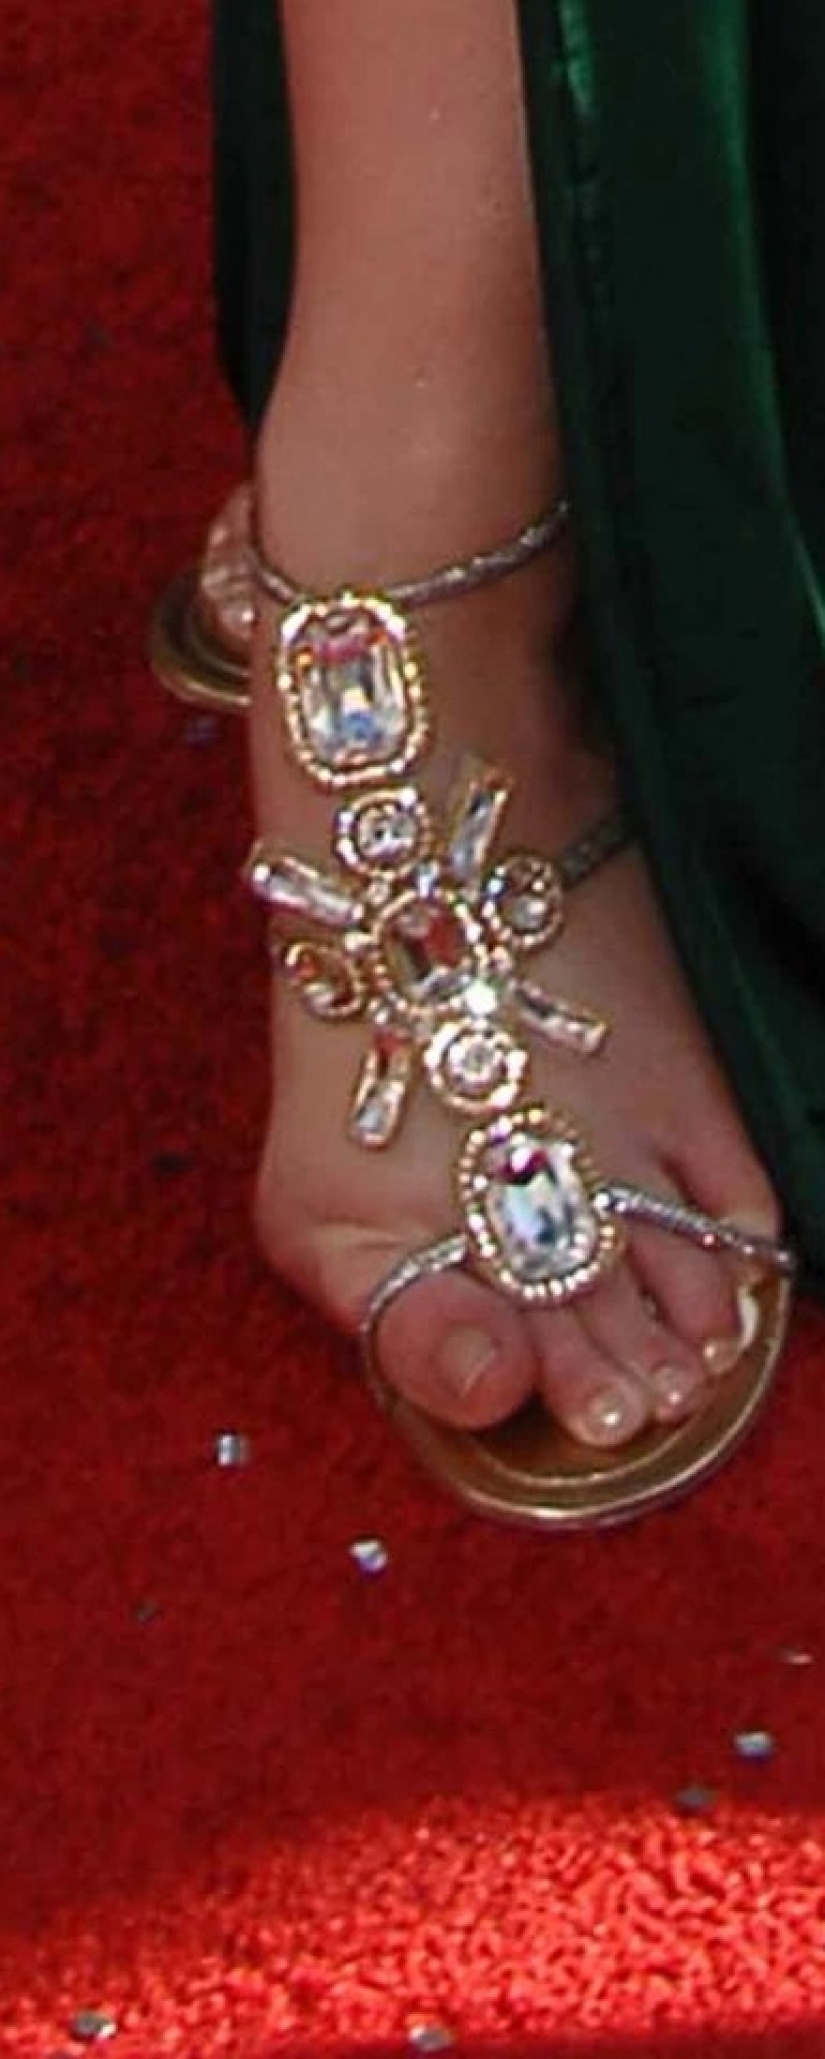 Vista inferior: Adivina qué celebridades tienen dedos de los pies en las fotos